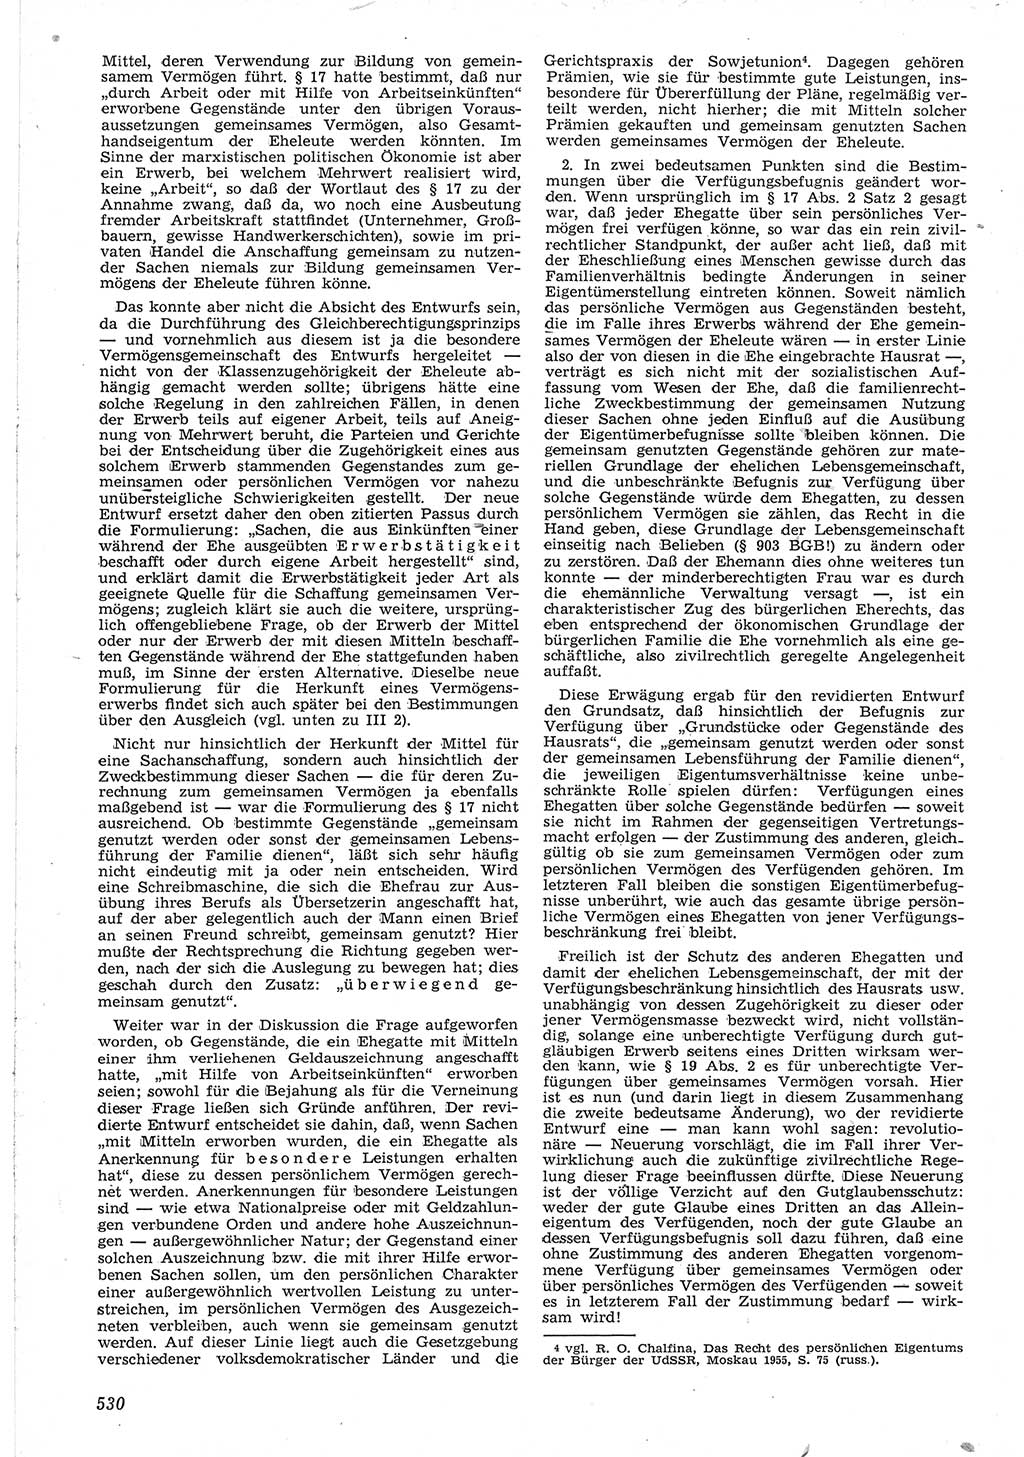 Neue Justiz (NJ), Zeitschrift für Recht und Rechtswissenschaft [Deutsche Demokratische Republik (DDR)], 12. Jahrgang 1958, Seite 530 (NJ DDR 1958, S. 530)